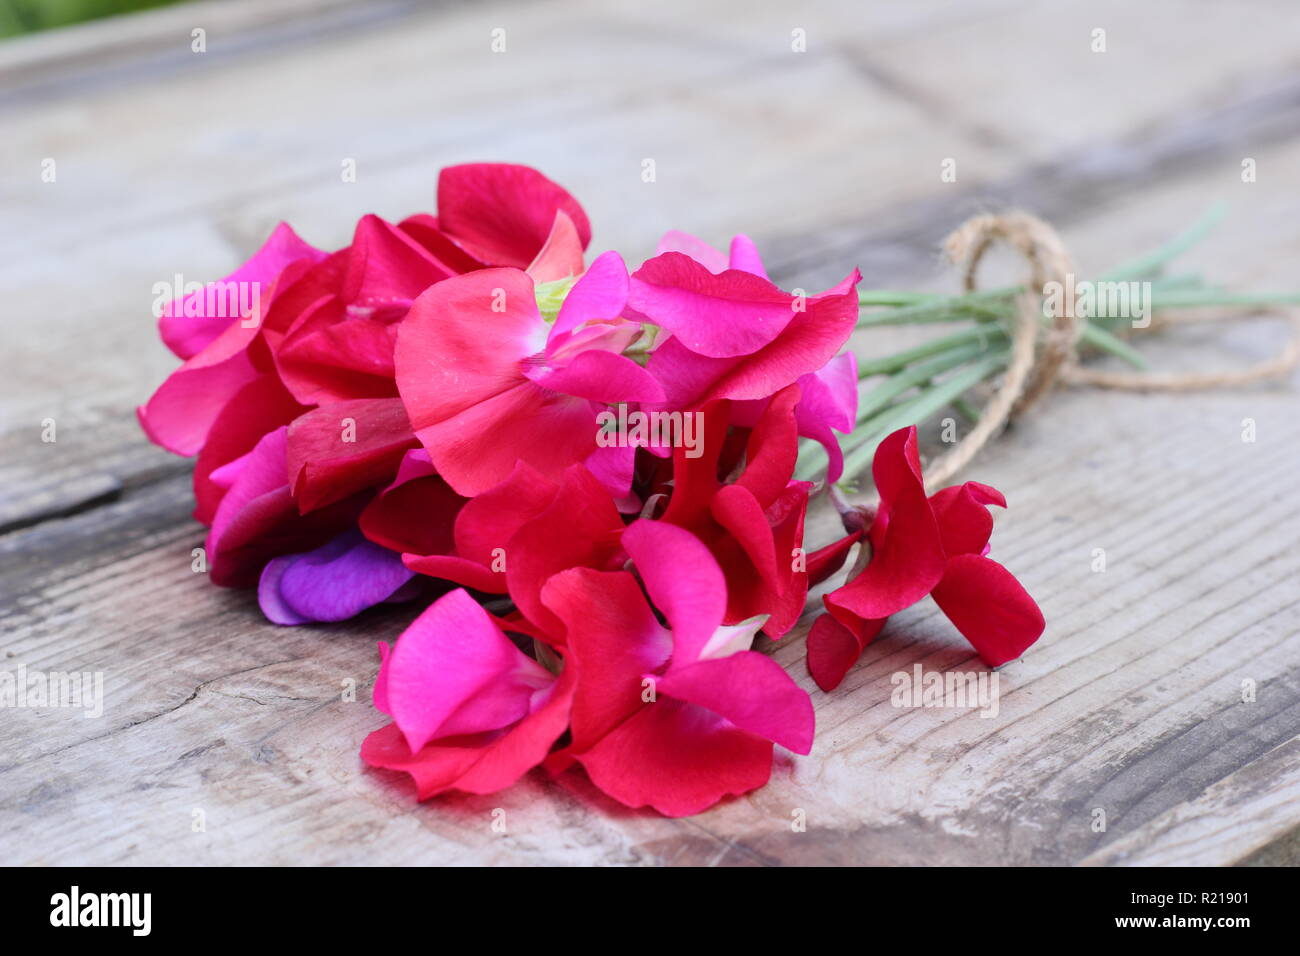 Lathyrus Odoratus - Spencer Vielfalt. Frisch Bündel Sweet pea Blumen auf Holztisch, Cut, Großbritannien Stockfoto